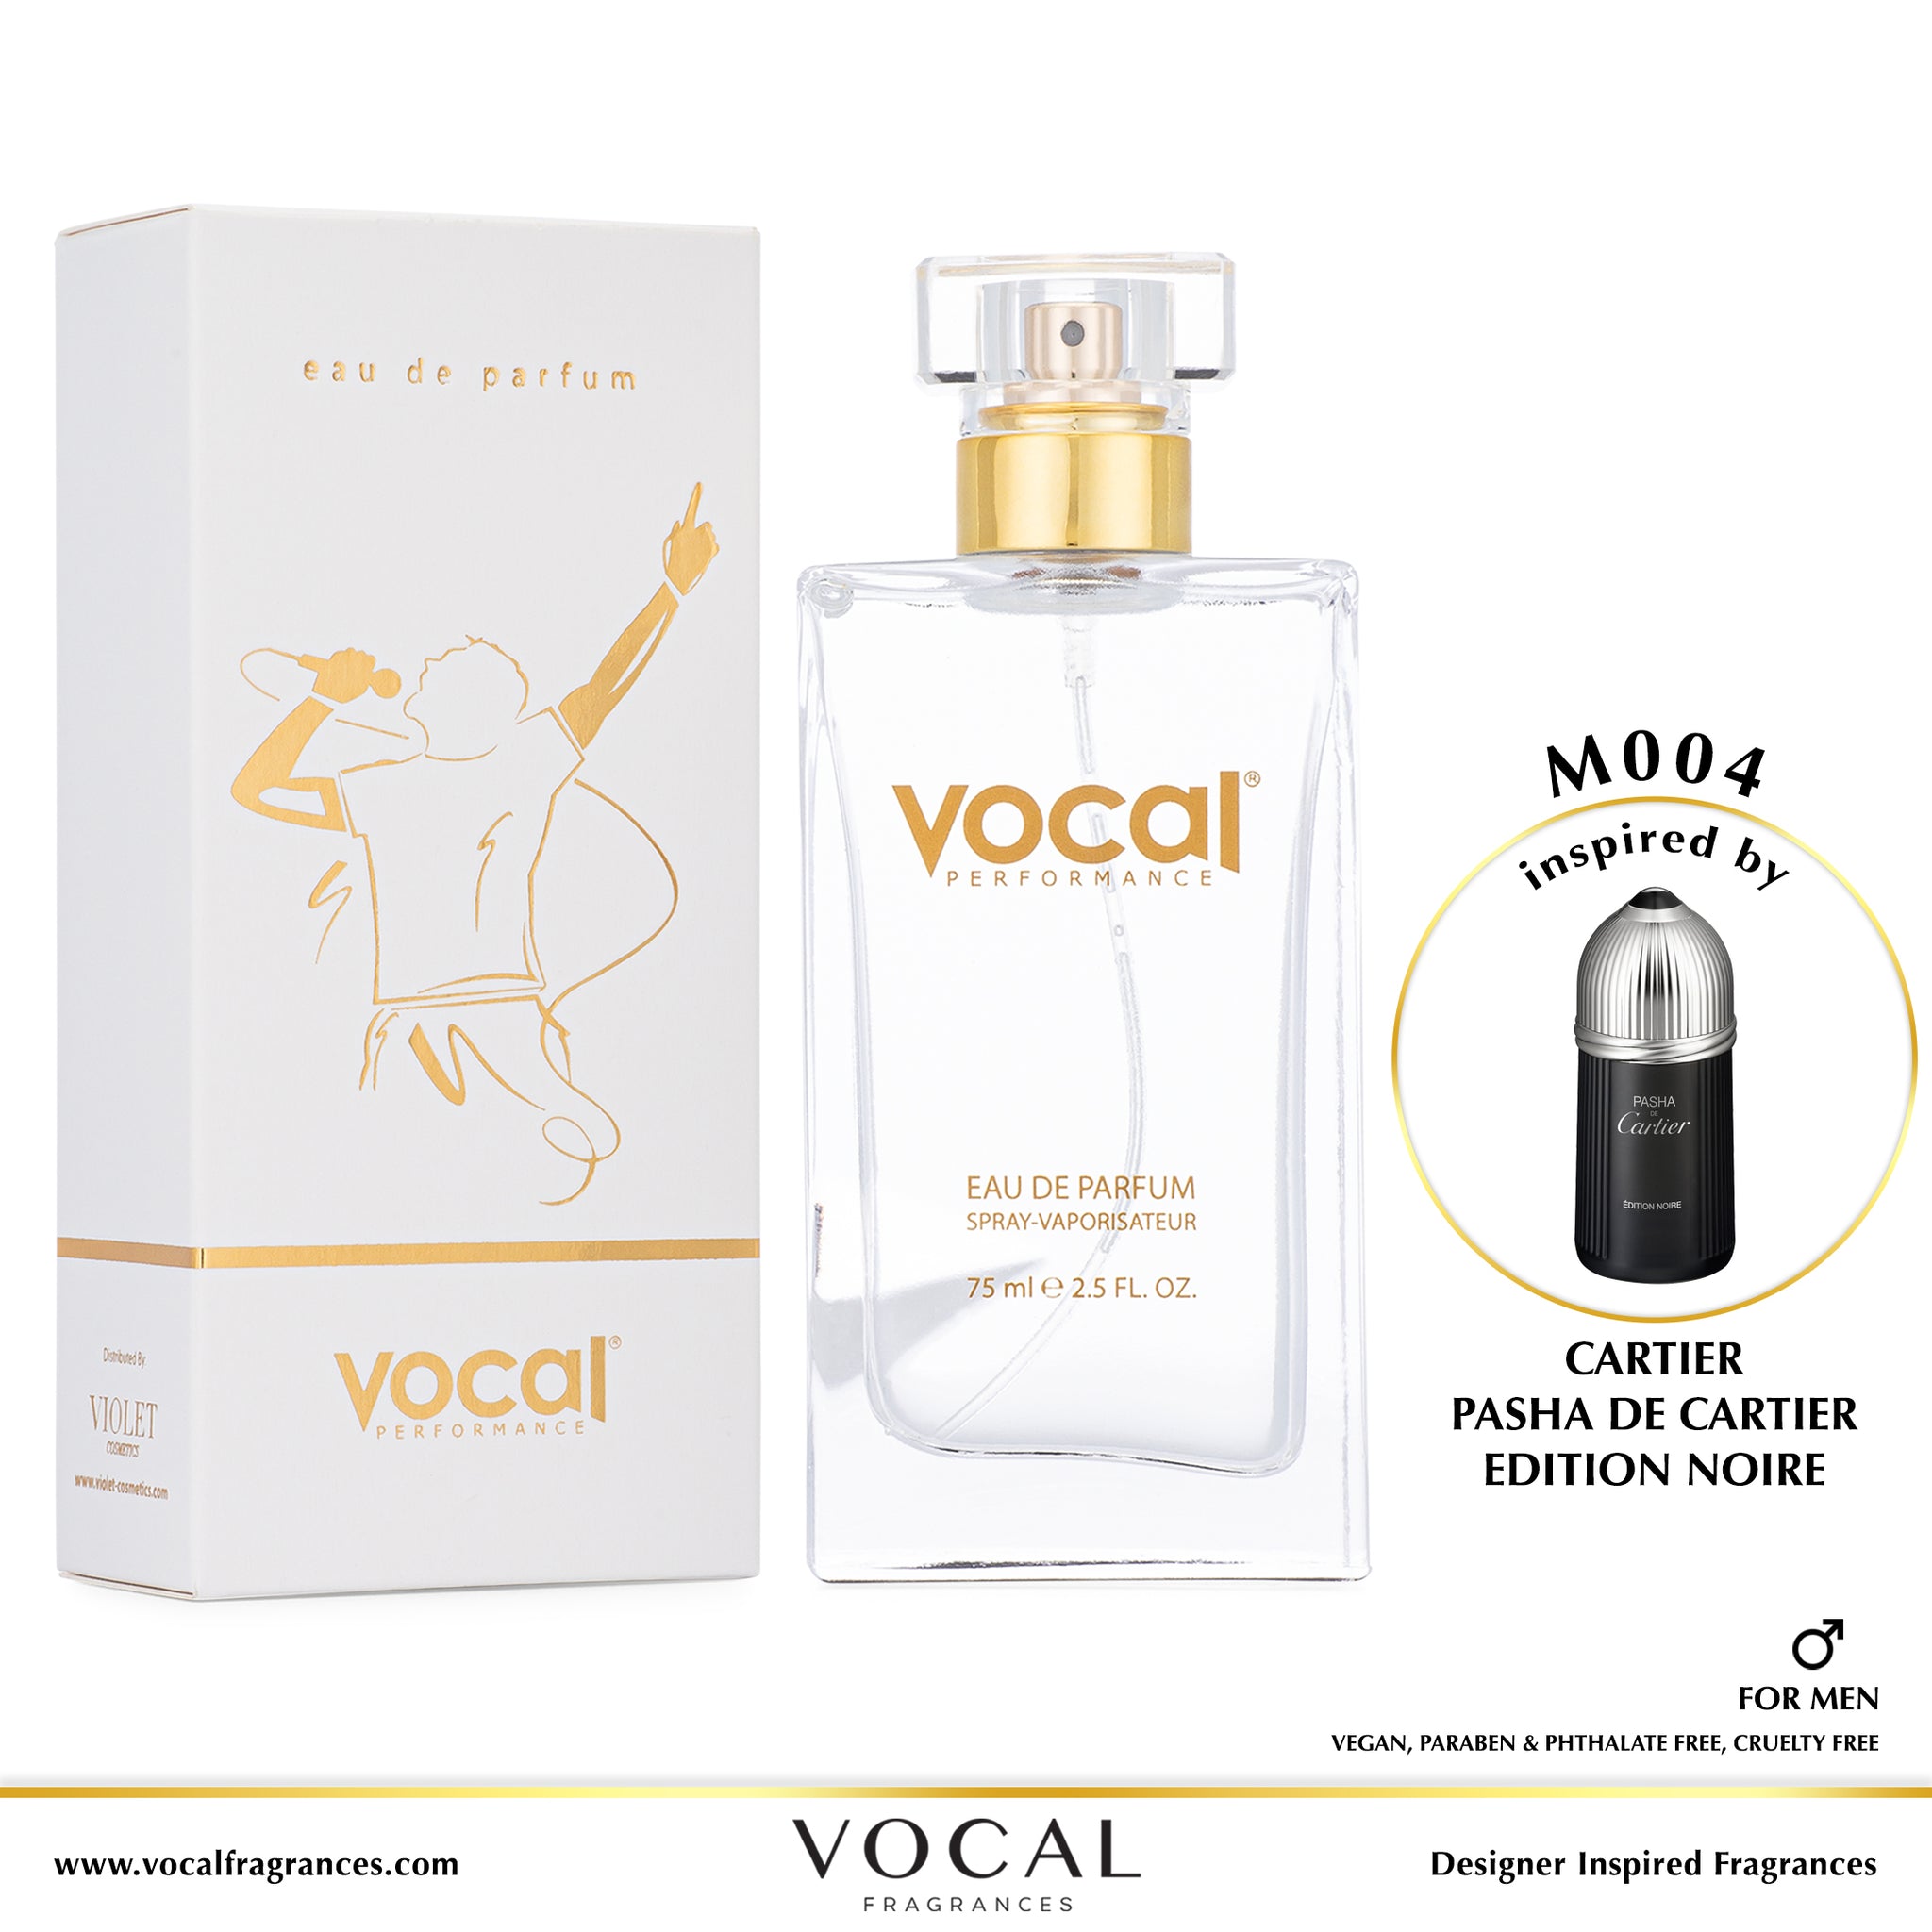 M004 Vocal Performance Eau De Parfum For Men Inspired by Cartier Pasha De Cartier Edition Noire